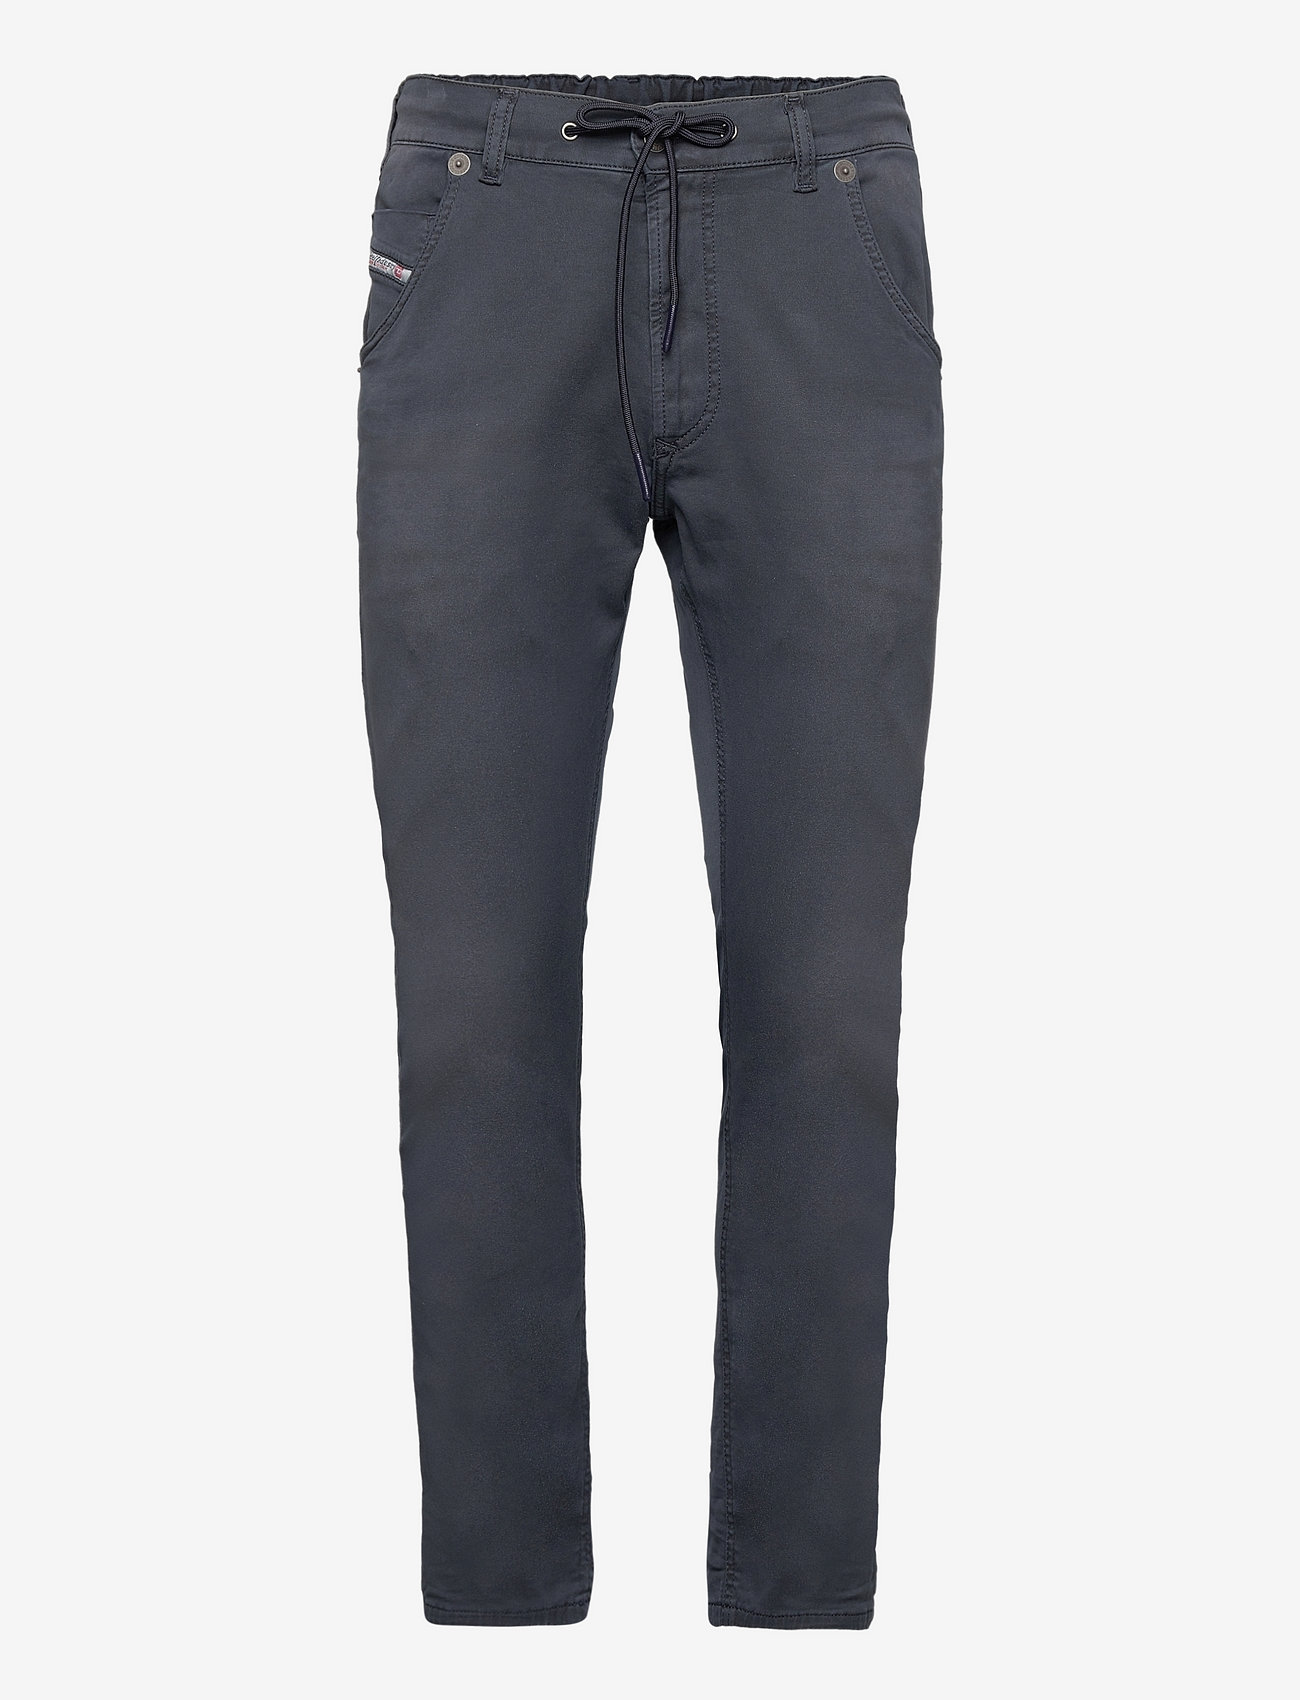 Diesel - KROOLEY-E-NE Sweat jeans - slim jeans - dark/blue - 0